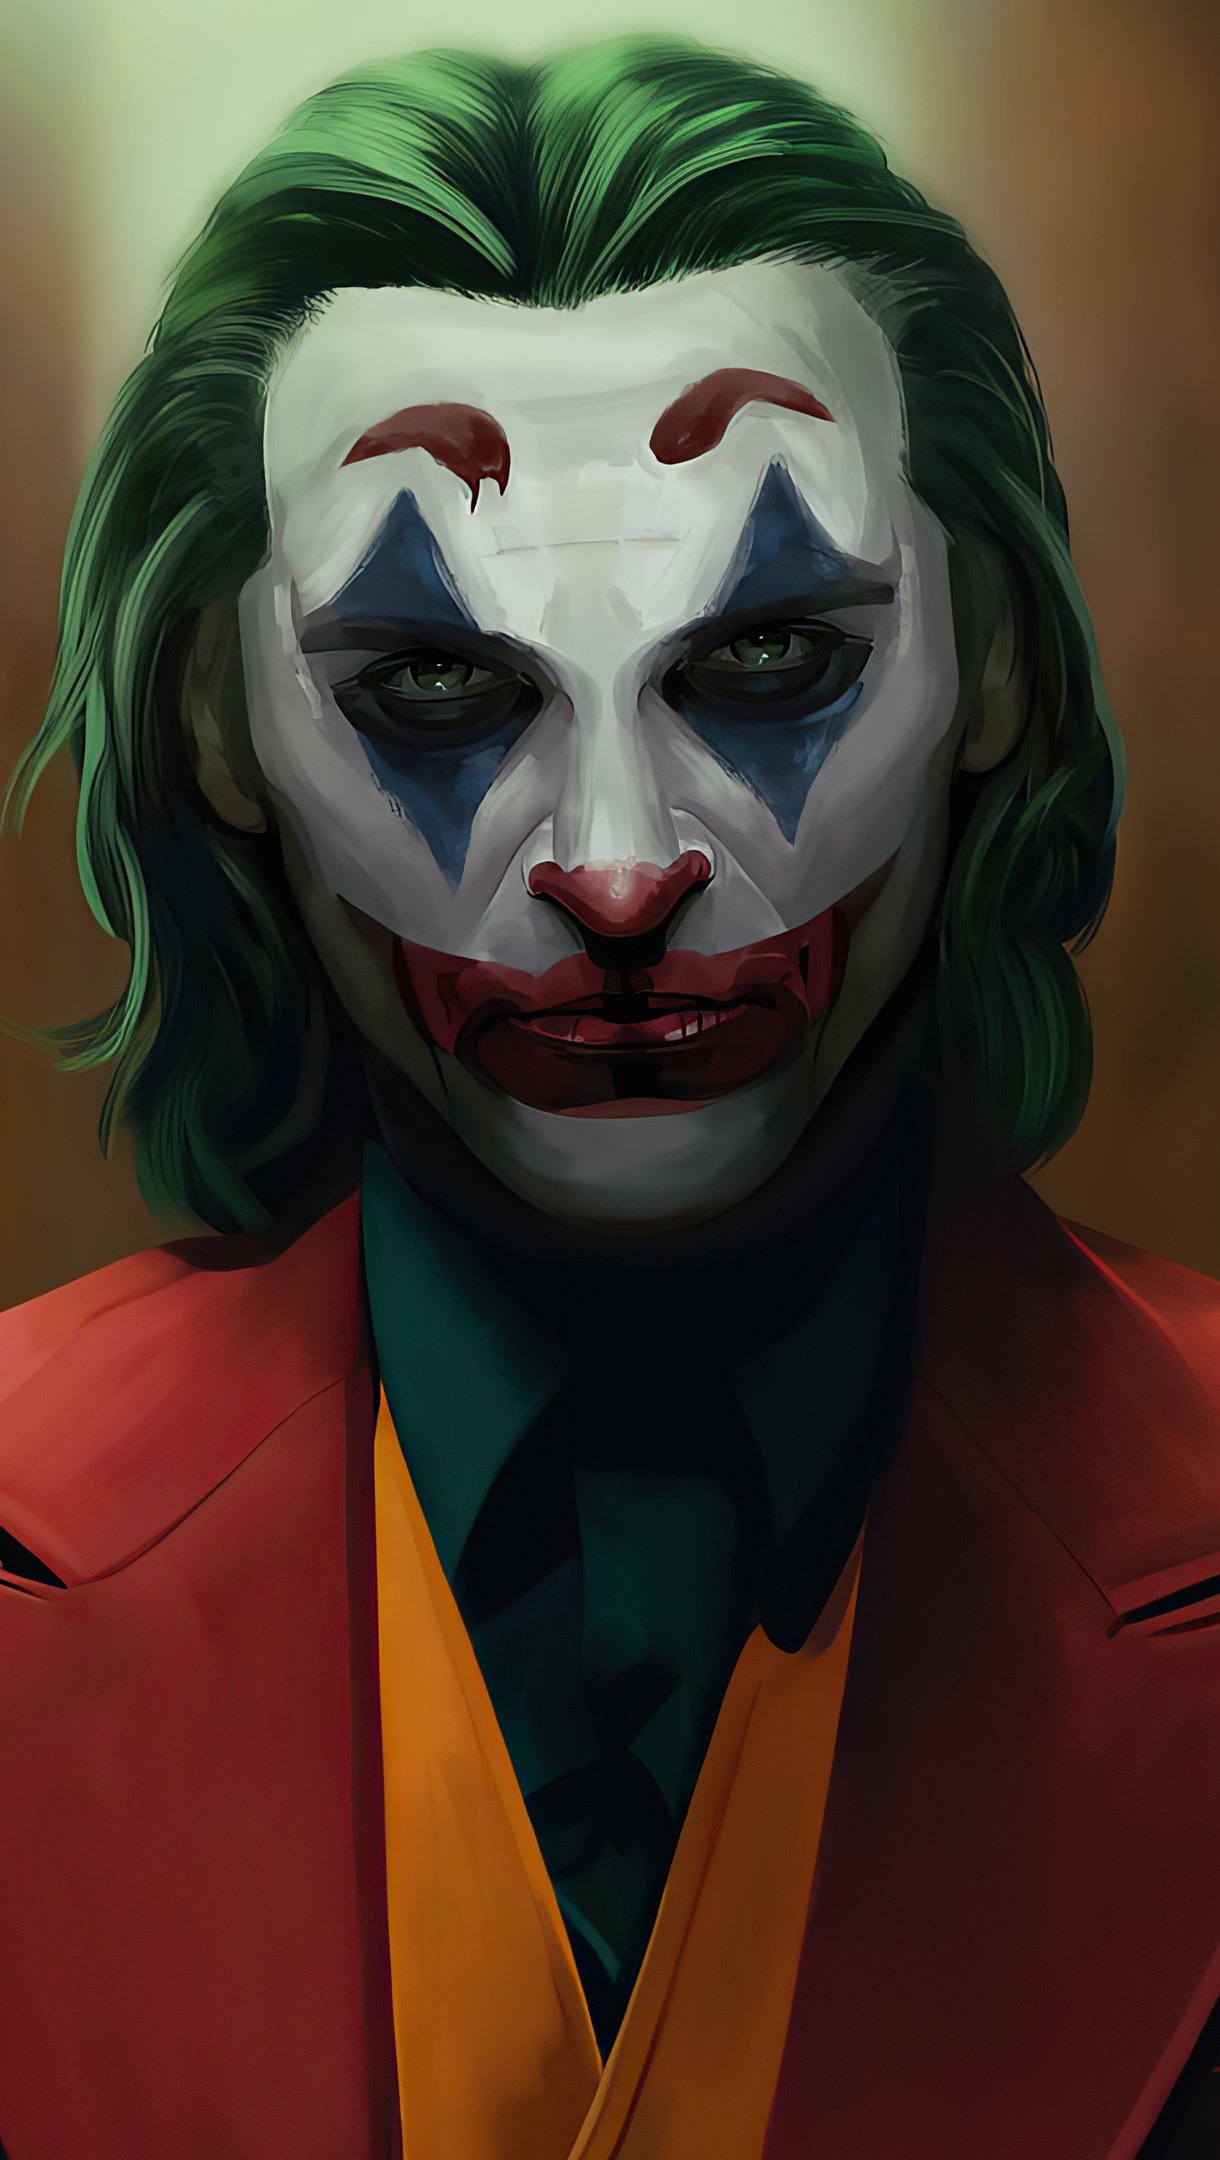 Joker Sketch Artwork Wallpaper 4k Ultra HD ID:5921